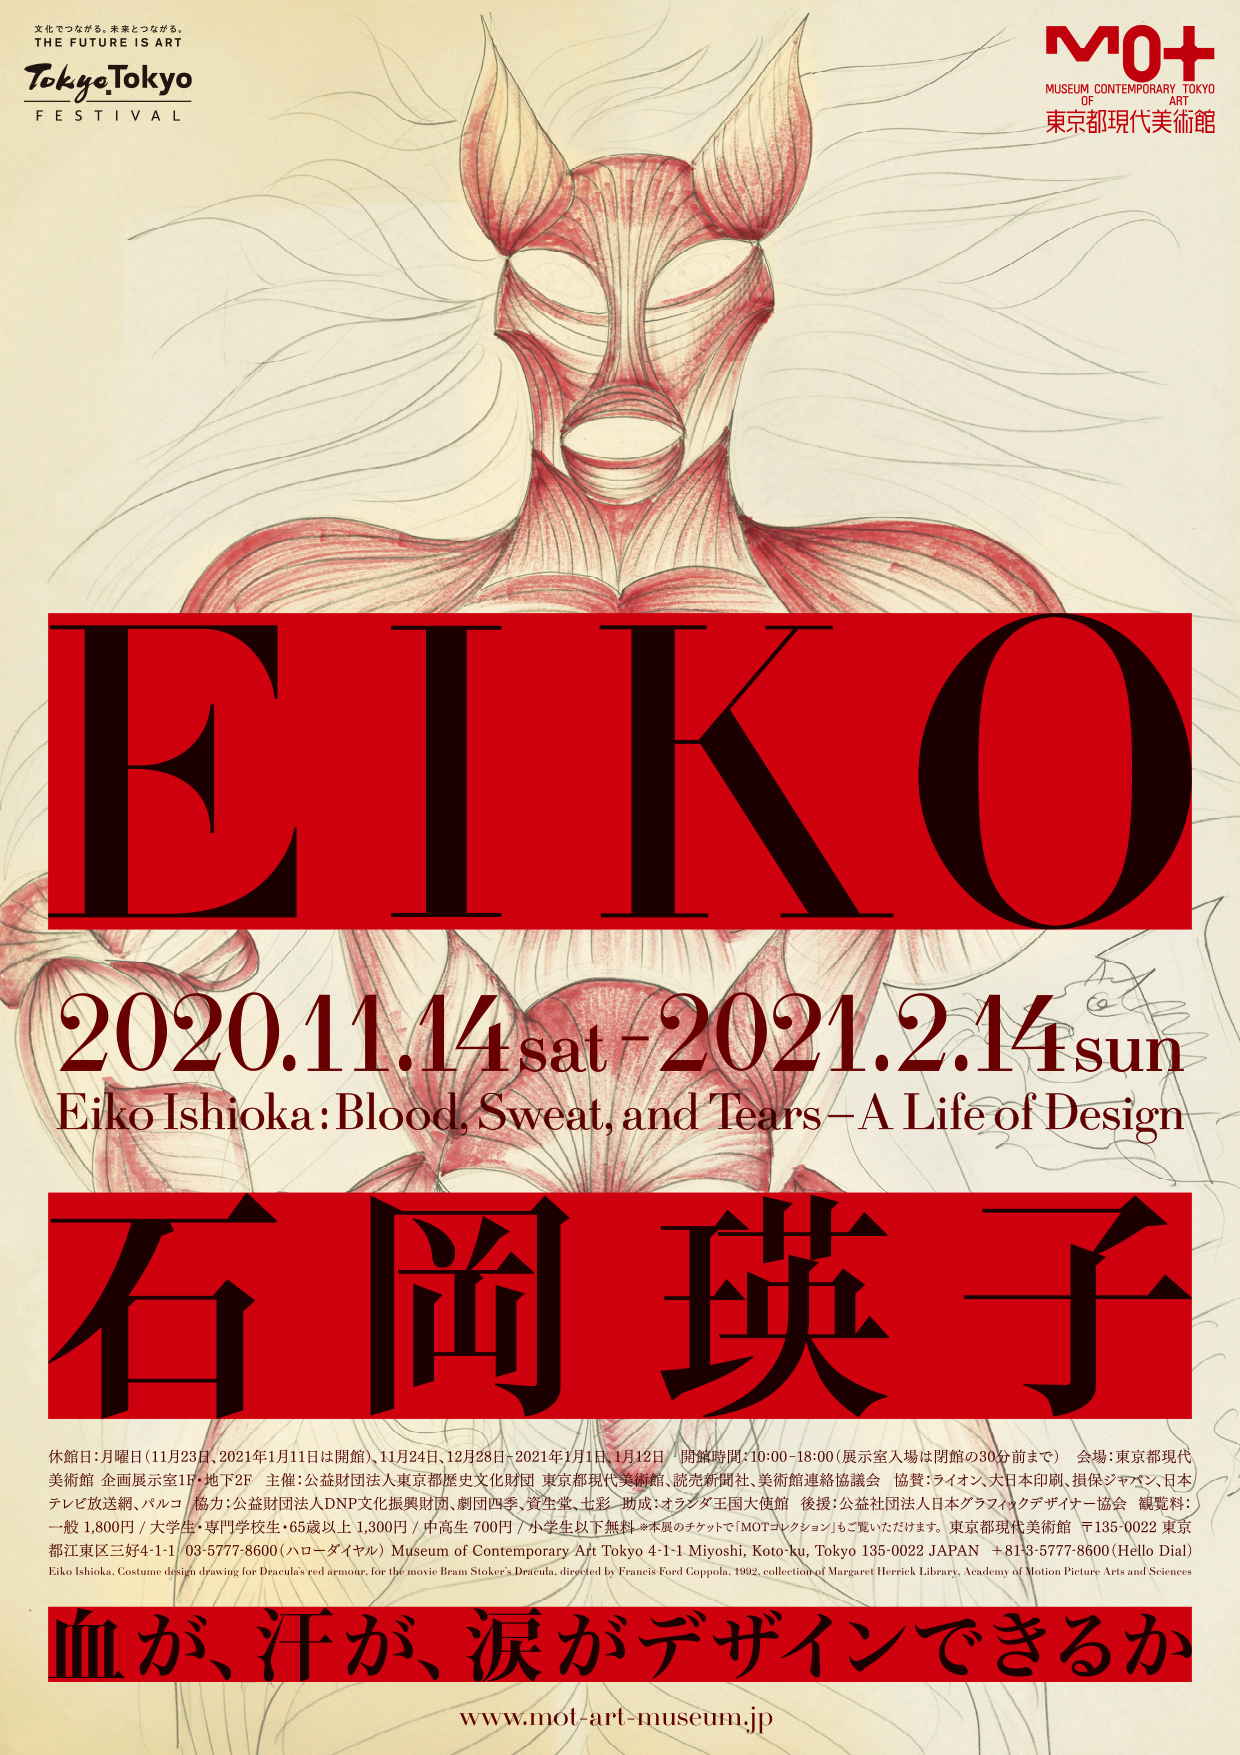 EIKO ON STAGE / Eiko Ishioka 石岡瑛子-